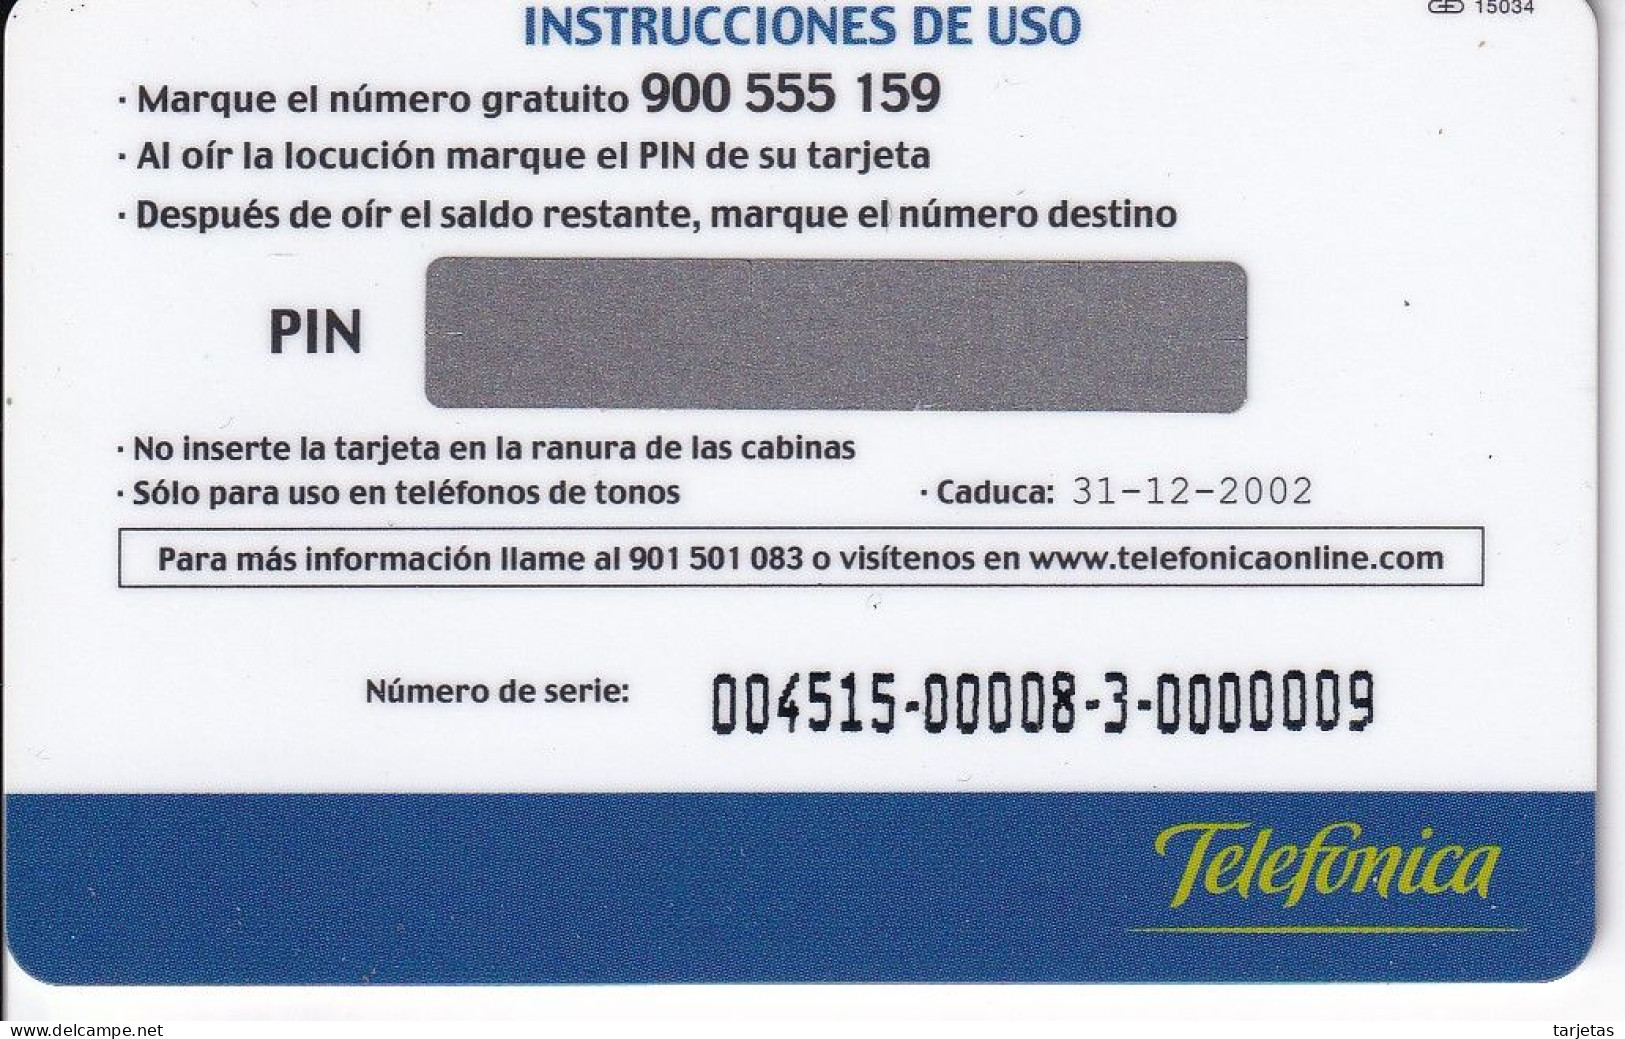 TARJETA DE ESPAÑA DE TELEFONICA V ENCUENTRO DEL CANAL INDIRECTO (NUEVA-MINT) - Telefonica